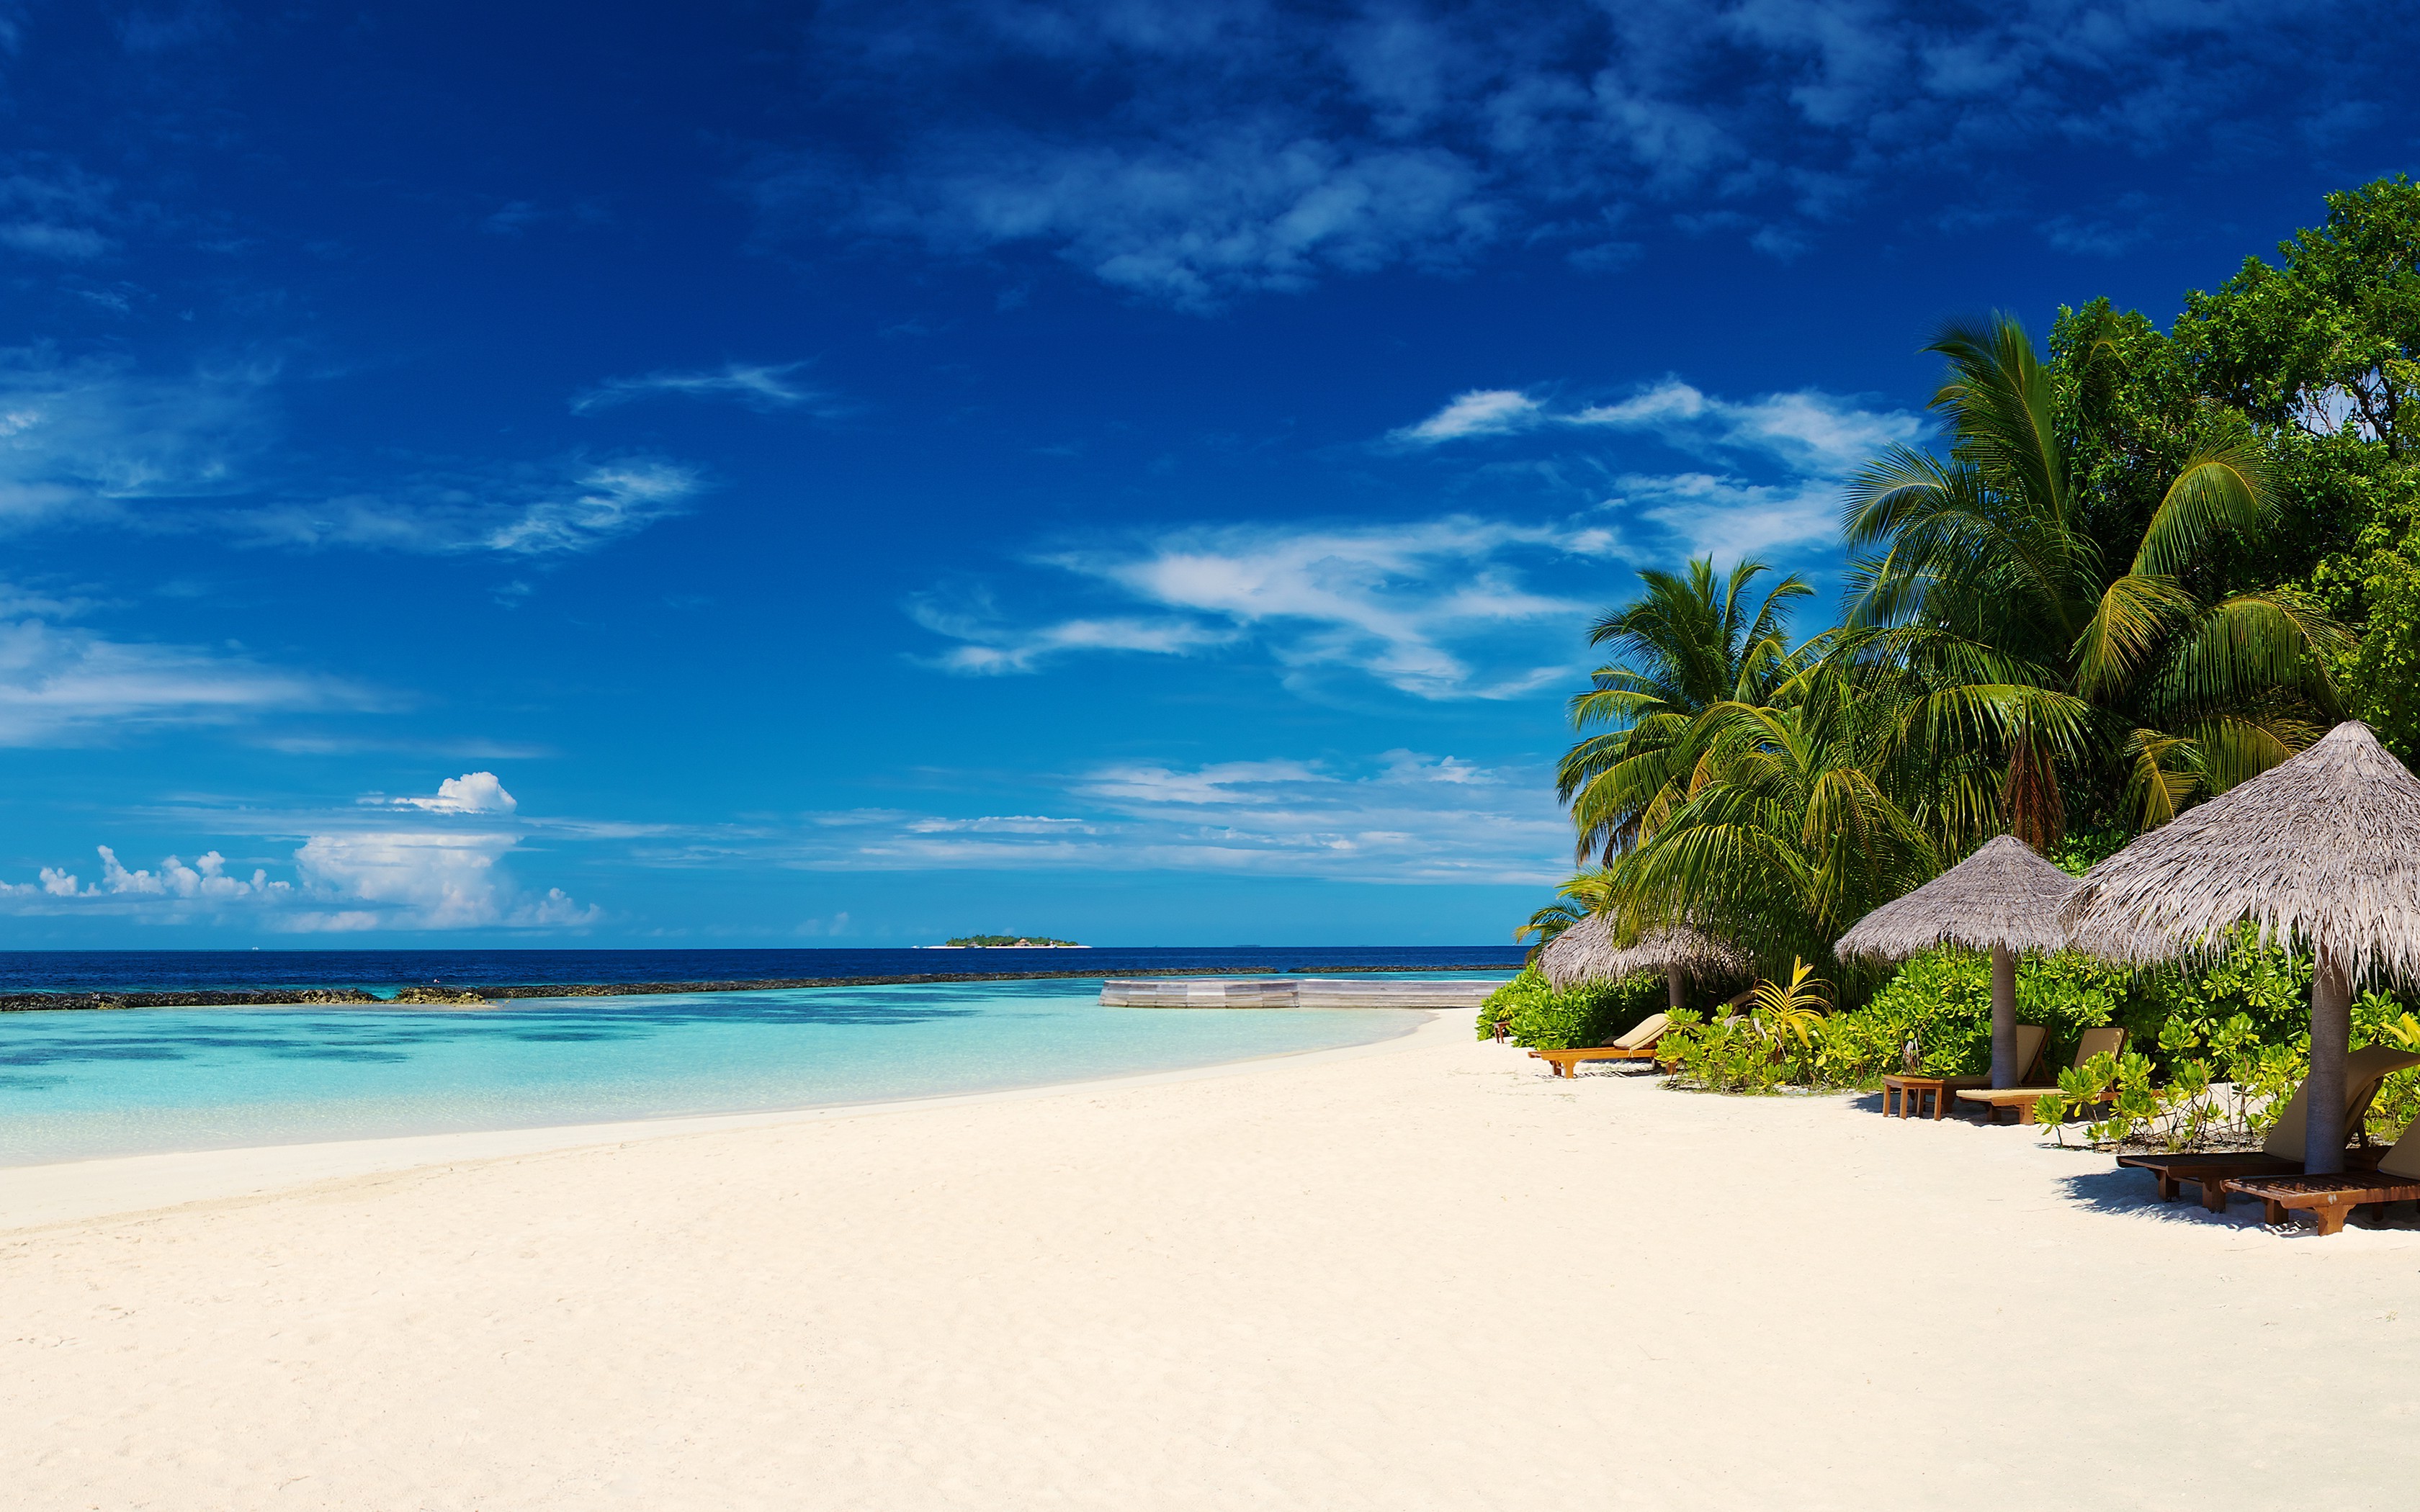 Скачать картинку Пляж, Пальмы, Океан, Праздник, Синий, Земля, Тропический, Мальдивы, Фотографии в телефон бесплатно.